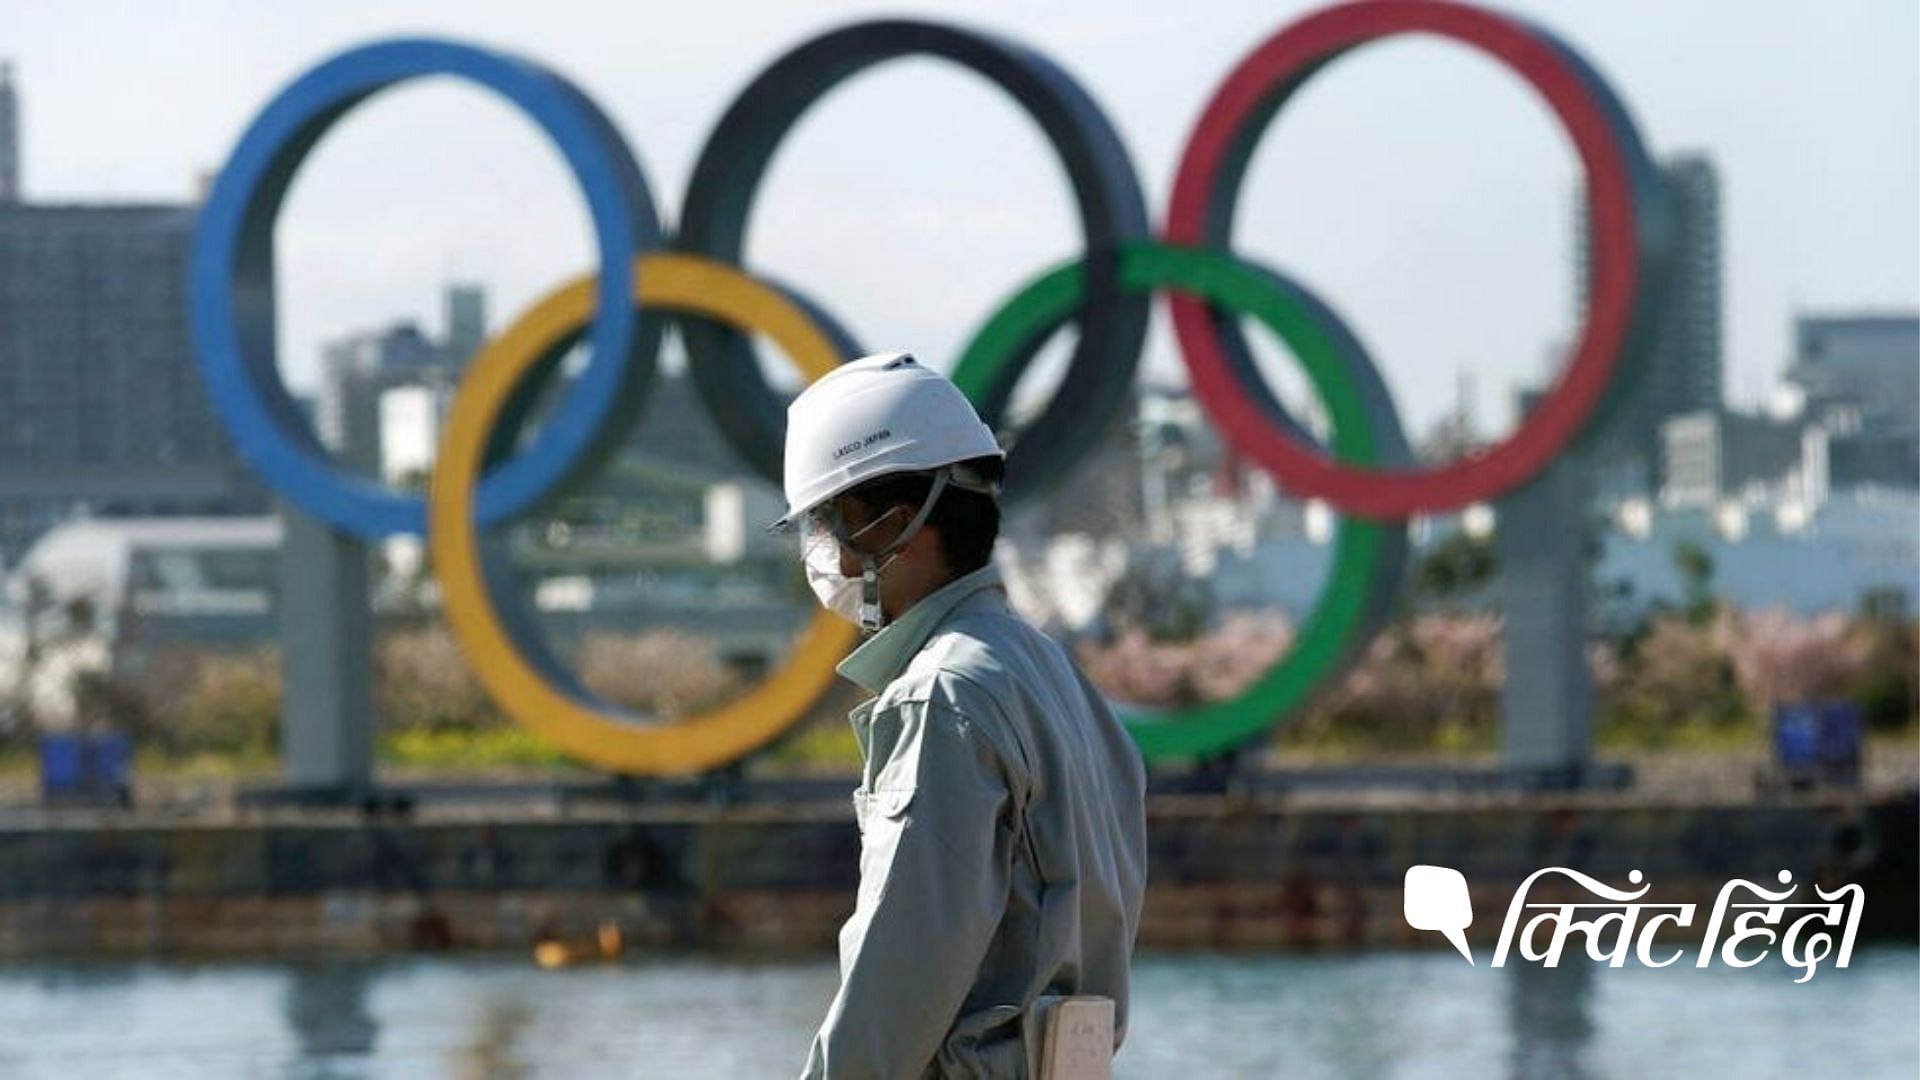 इस साल जुलाई में होने वाले ओलंपिक खेलों के आयोजन को टाला जा सकता है